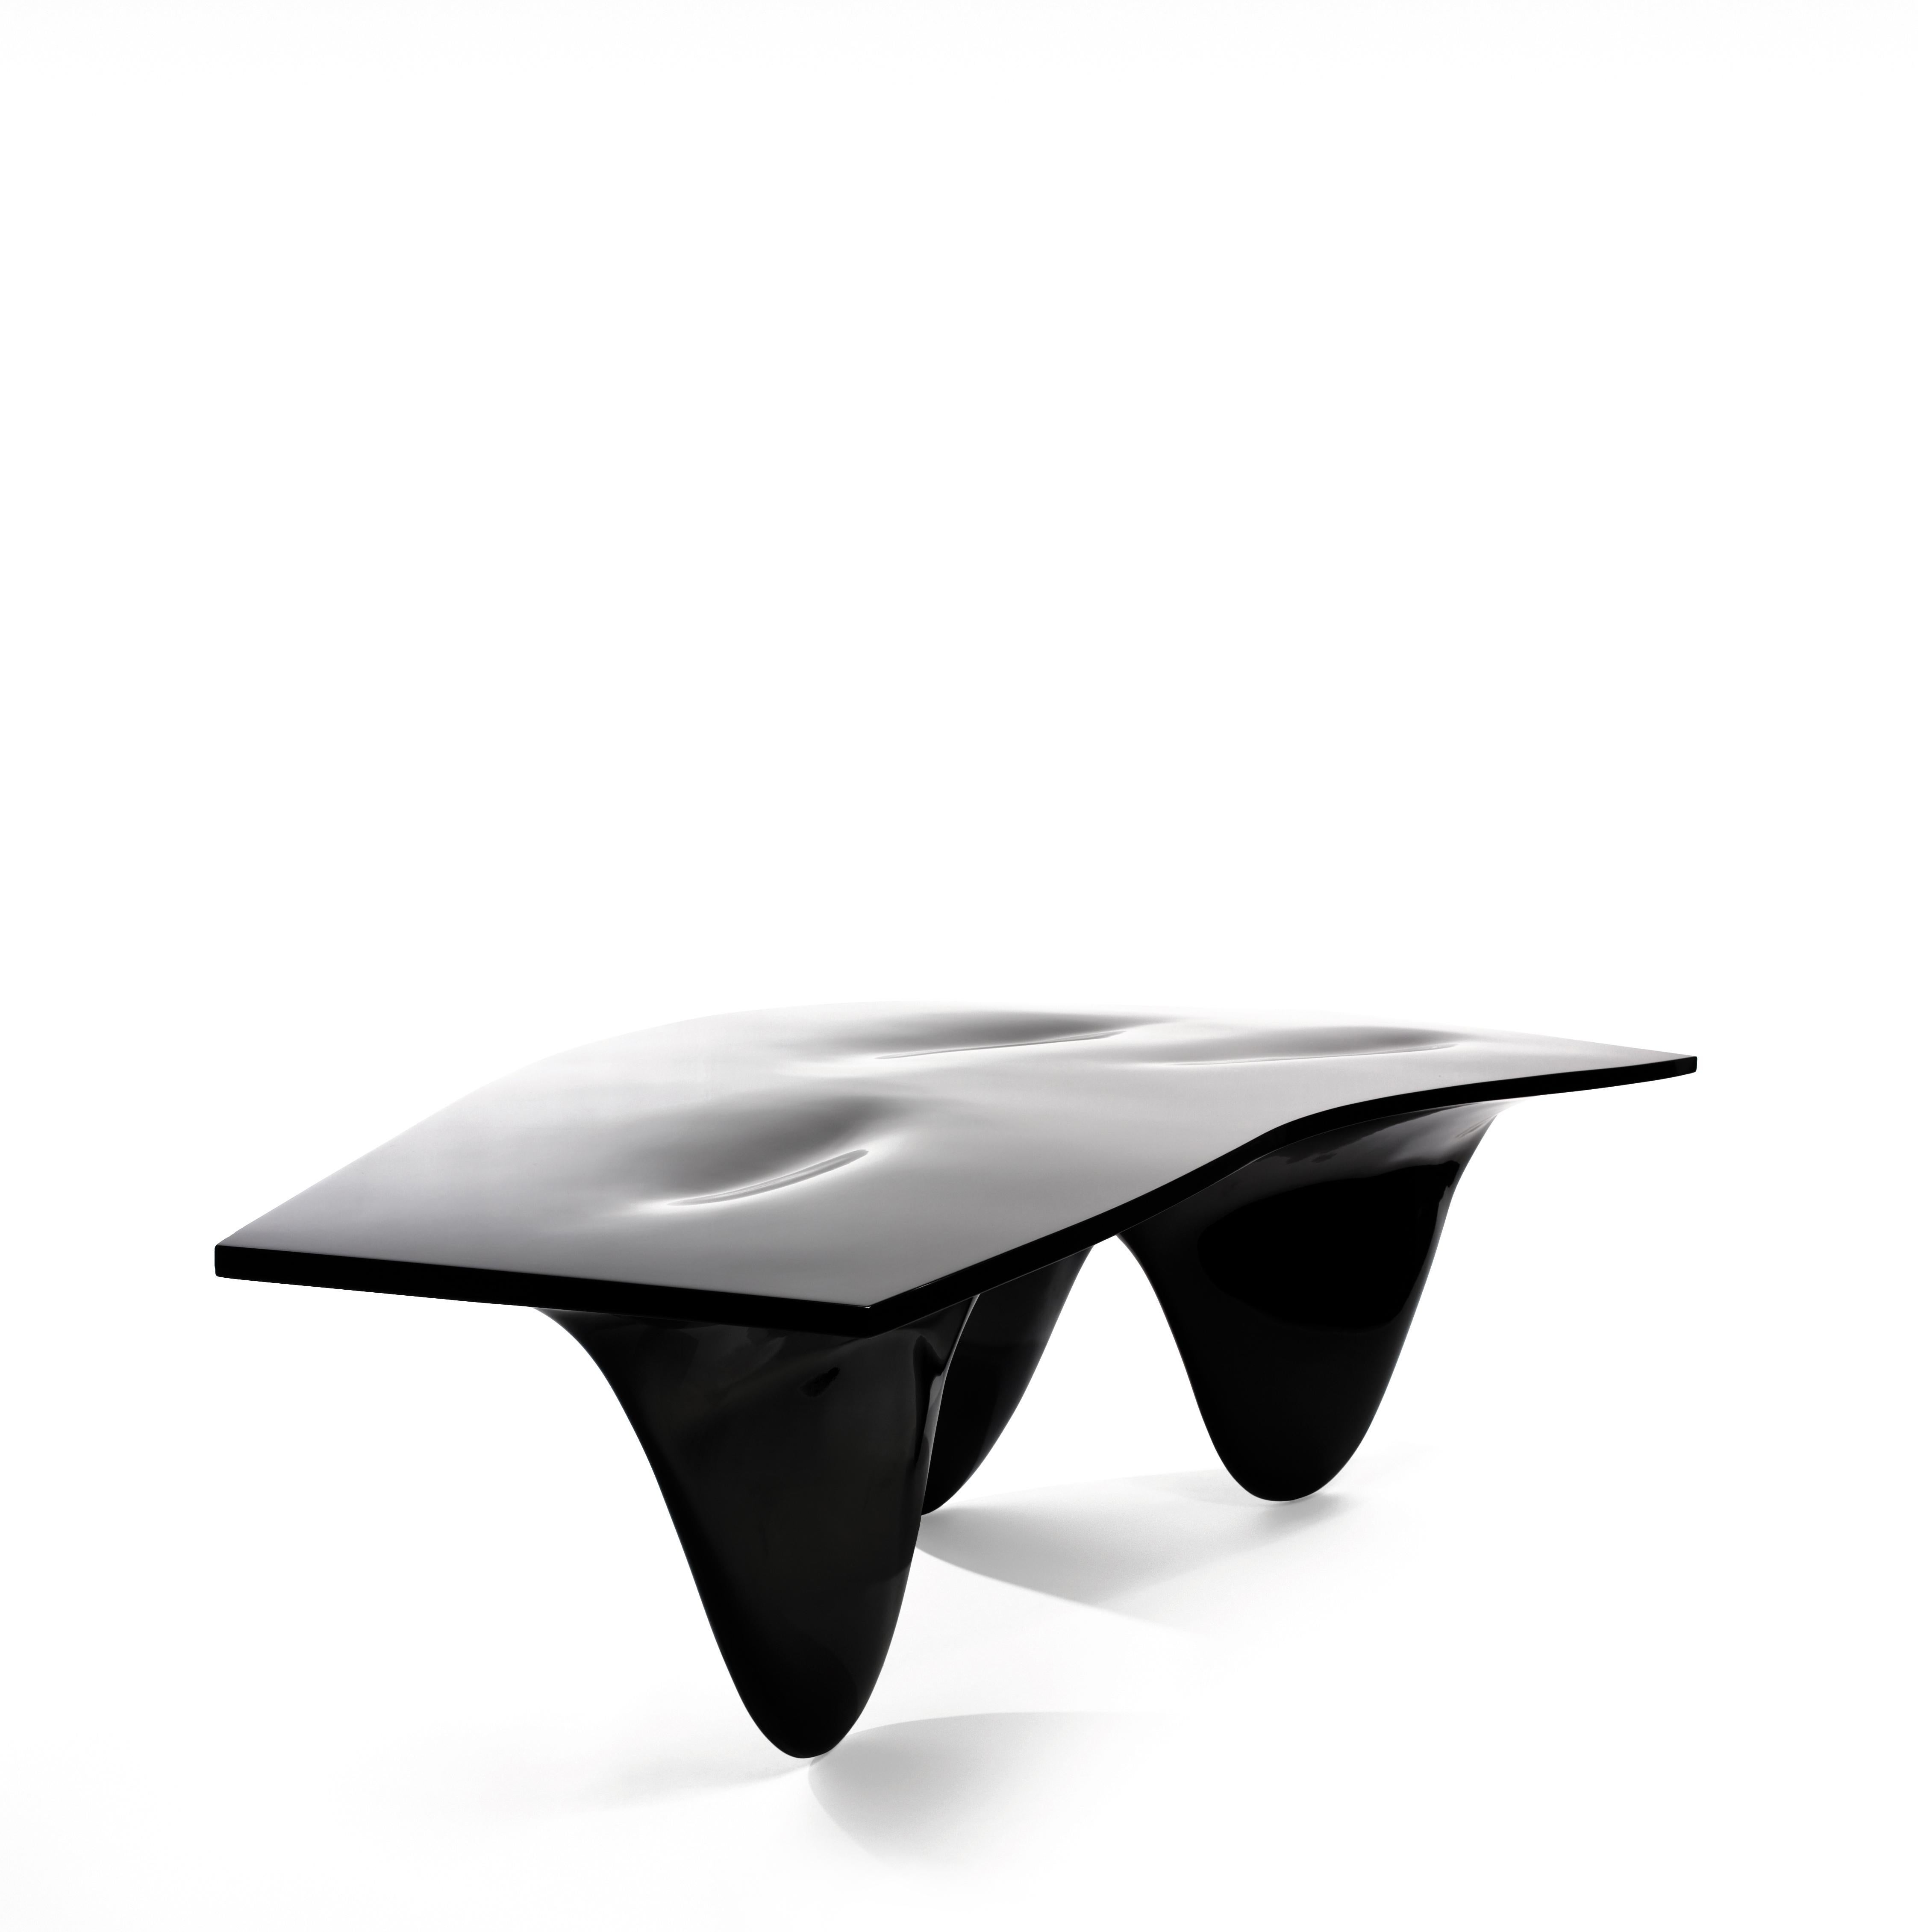 La voluptueuse table Aqua de Zaha Hadid est un tout ininterrompu - une forme curieuse et curviligne qui invite les spectateurs à s'engager avec elle. En tant que pièce centrale impressionnante, il constitue un point focal élégant dans n'importe quel